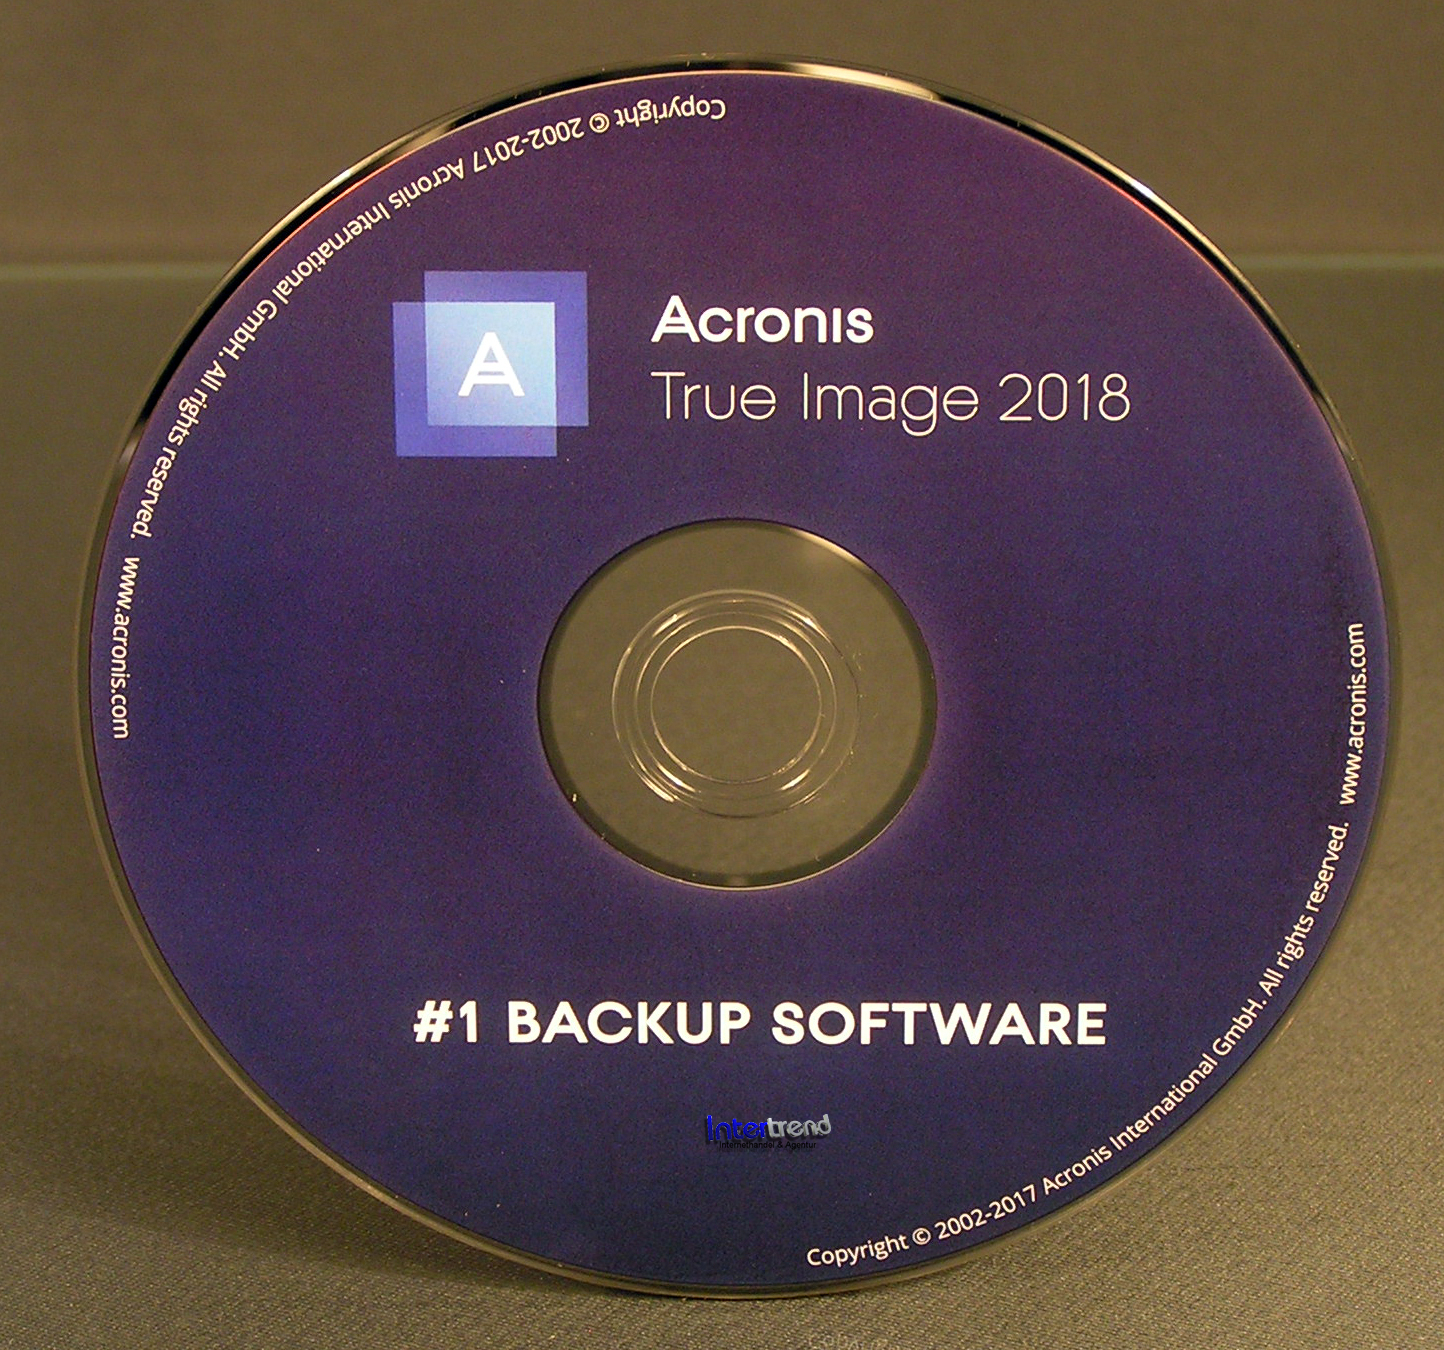 acronis true image 2018 mac full